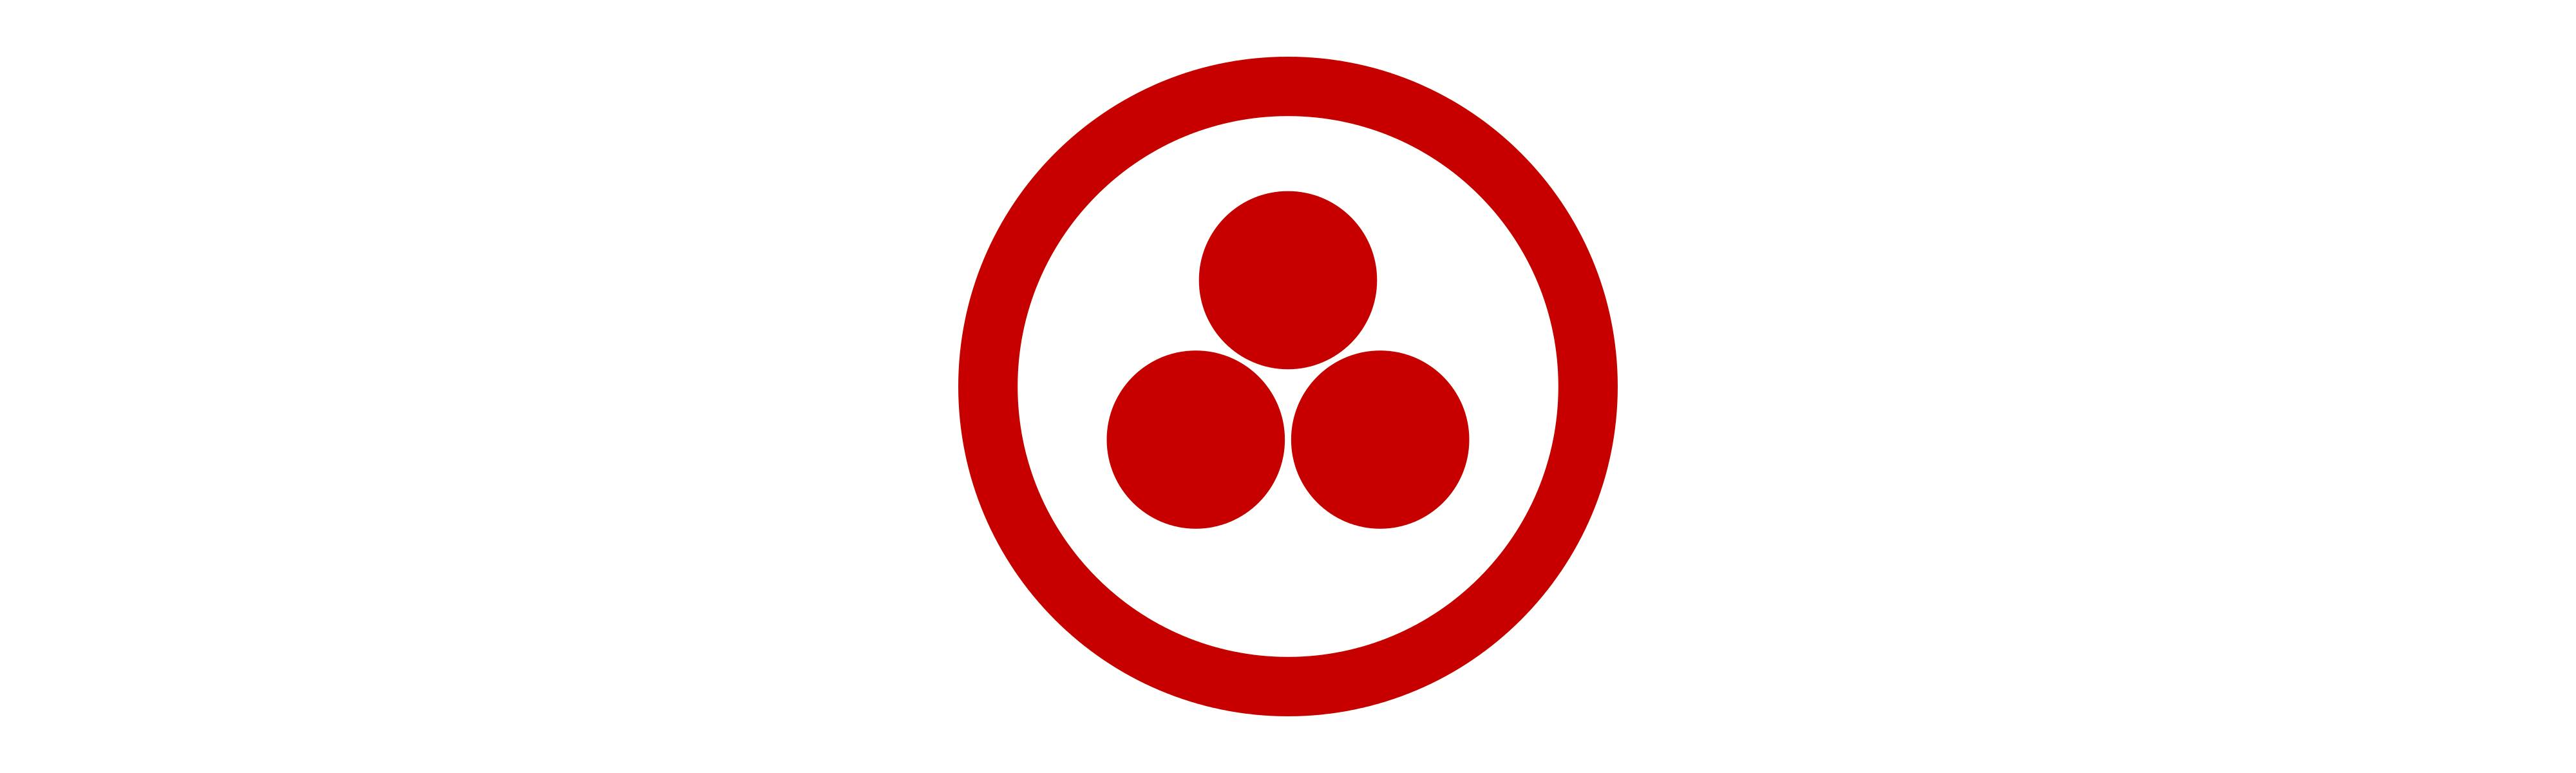 Simbolo della Bandiera della Pace disegnata da Nikolaj Konstantinovič Rerich: tre sfere di colore rosso su sfondo bianco circondate da un cerchio dello stesso colore.